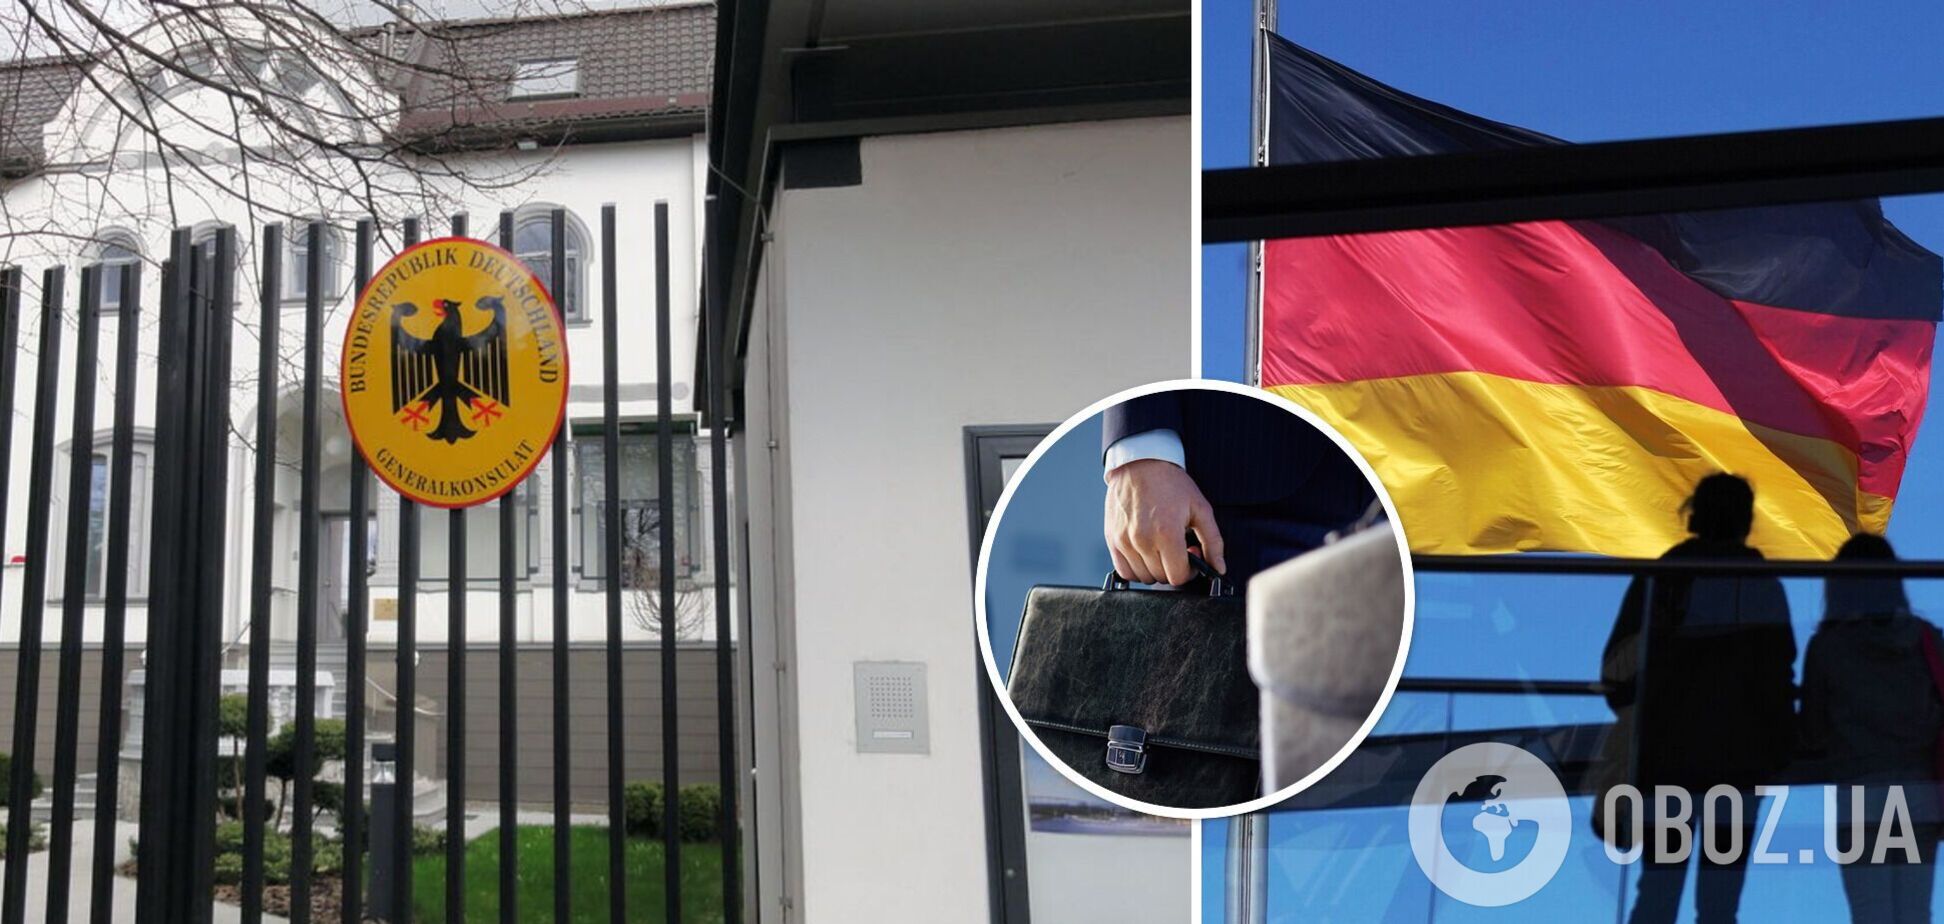 Германия закрыла консульство в Калининграде: что происходит